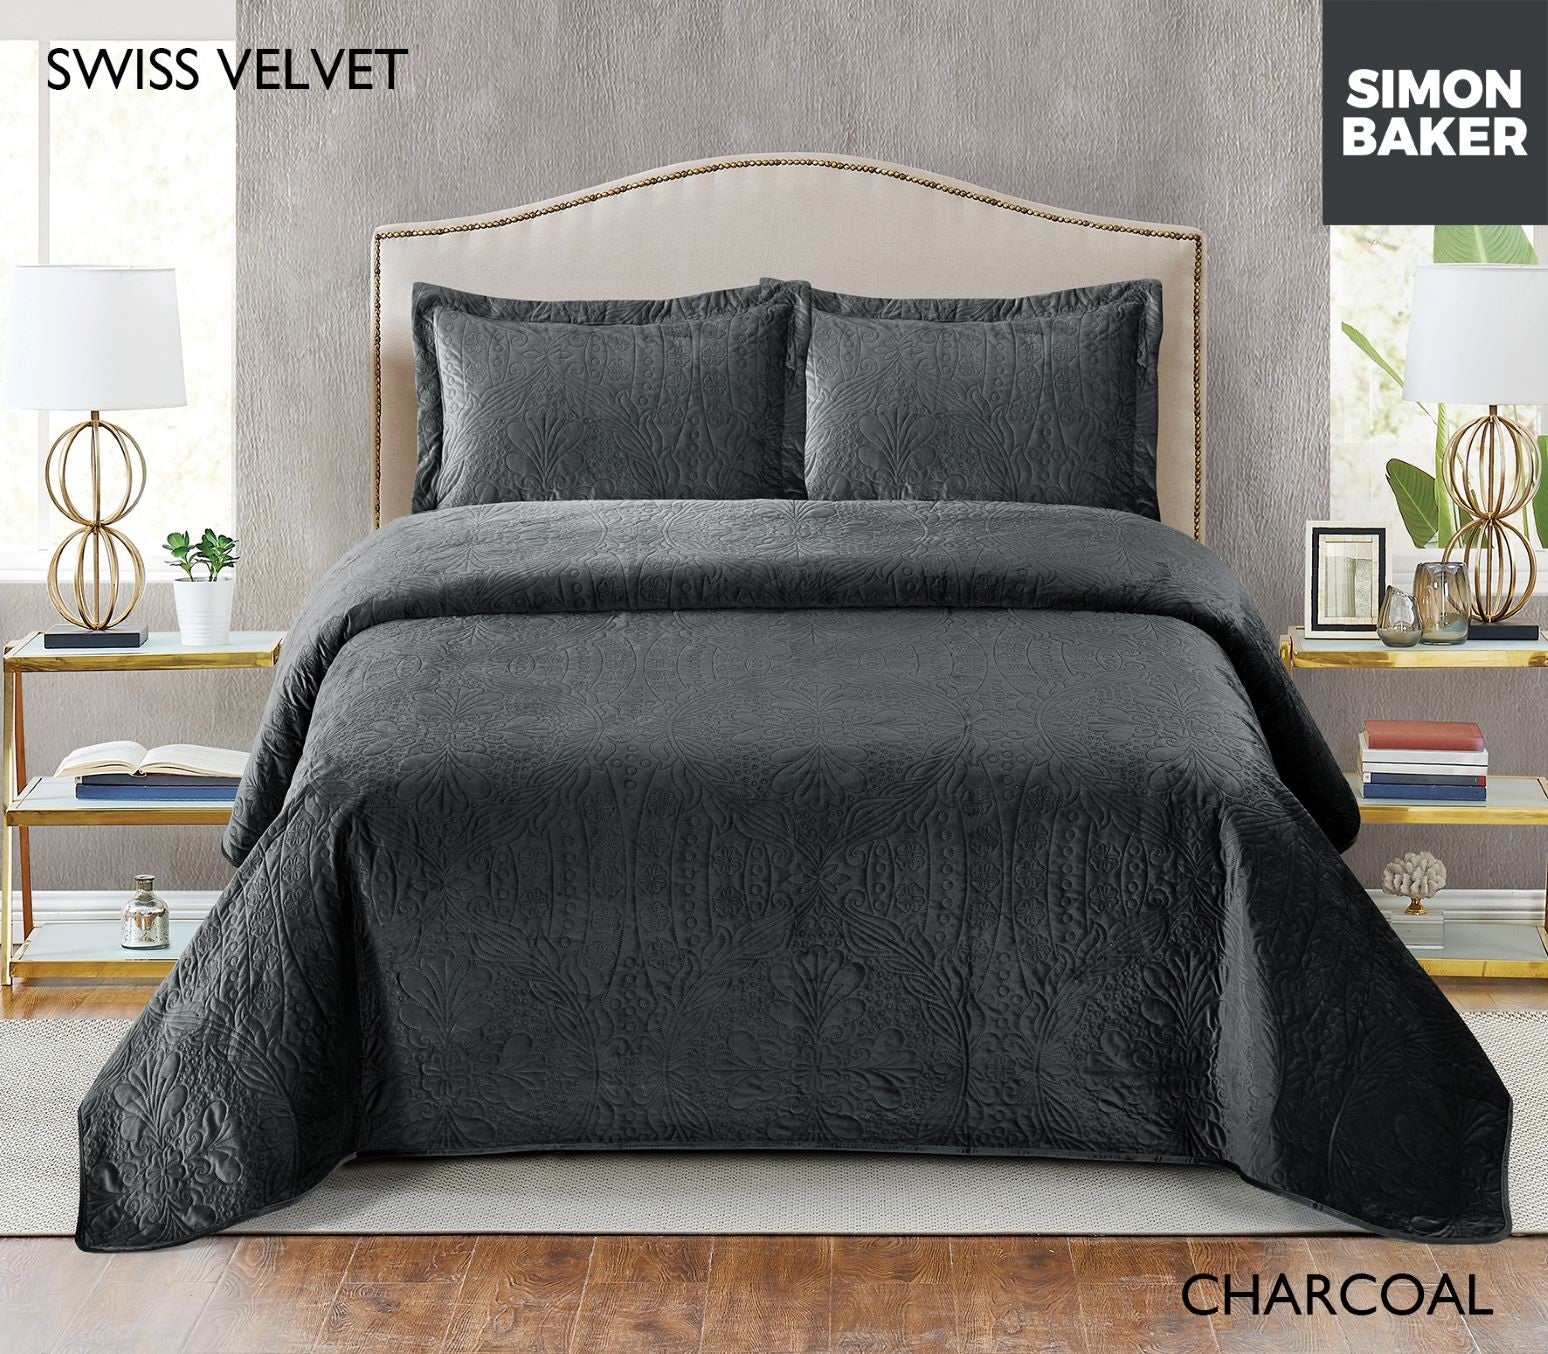 Simon Baker | Swiss Velvet Bedspread - Charcoal (Various Sizes)